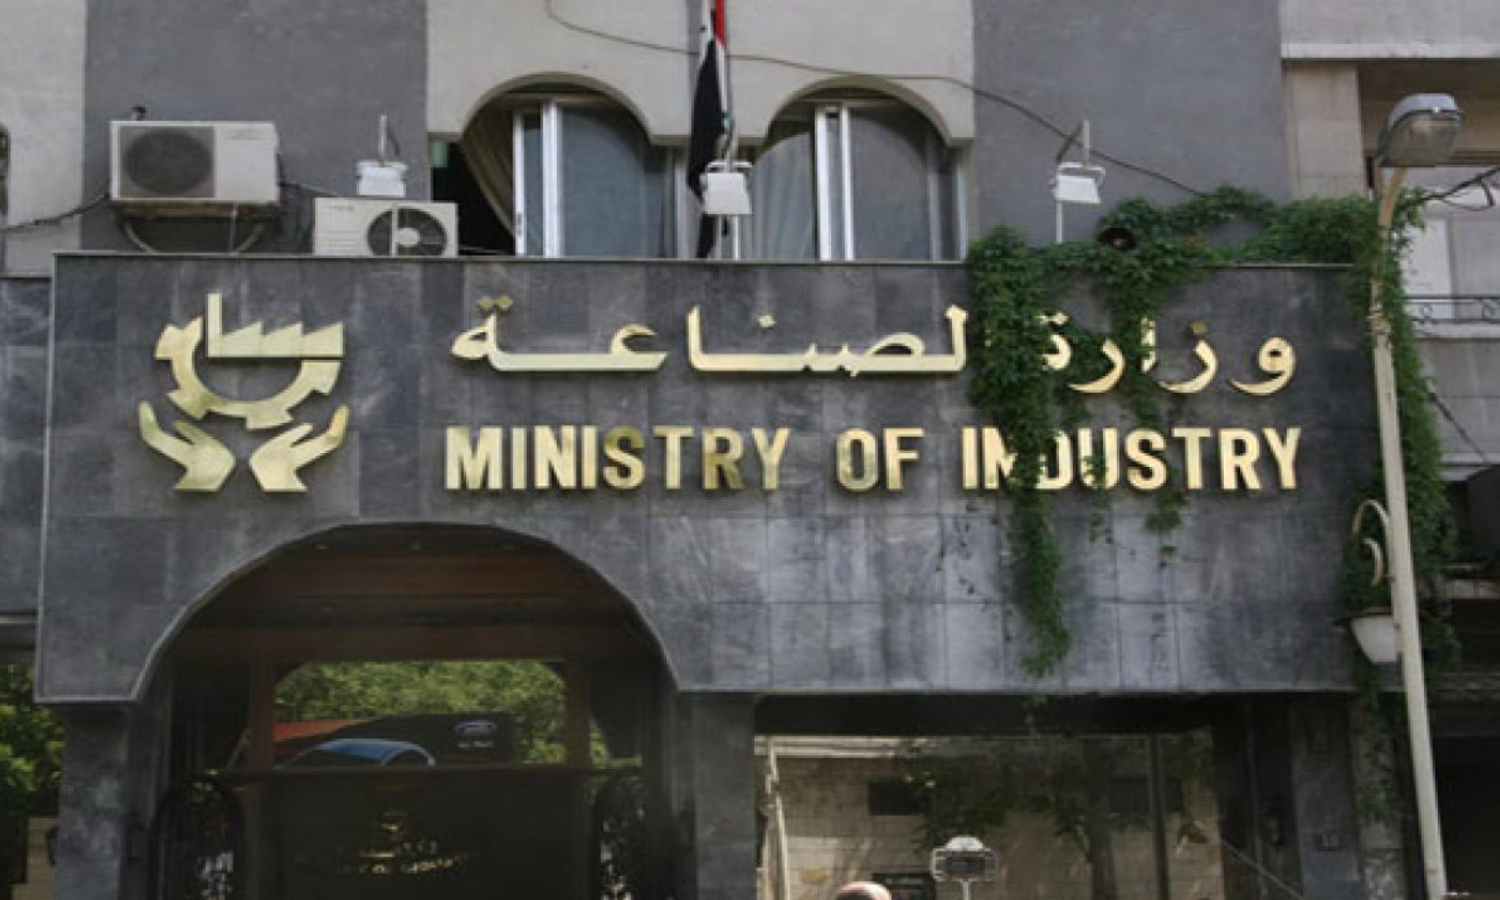 وزارة الصناعة السورية (إعمار سورية)